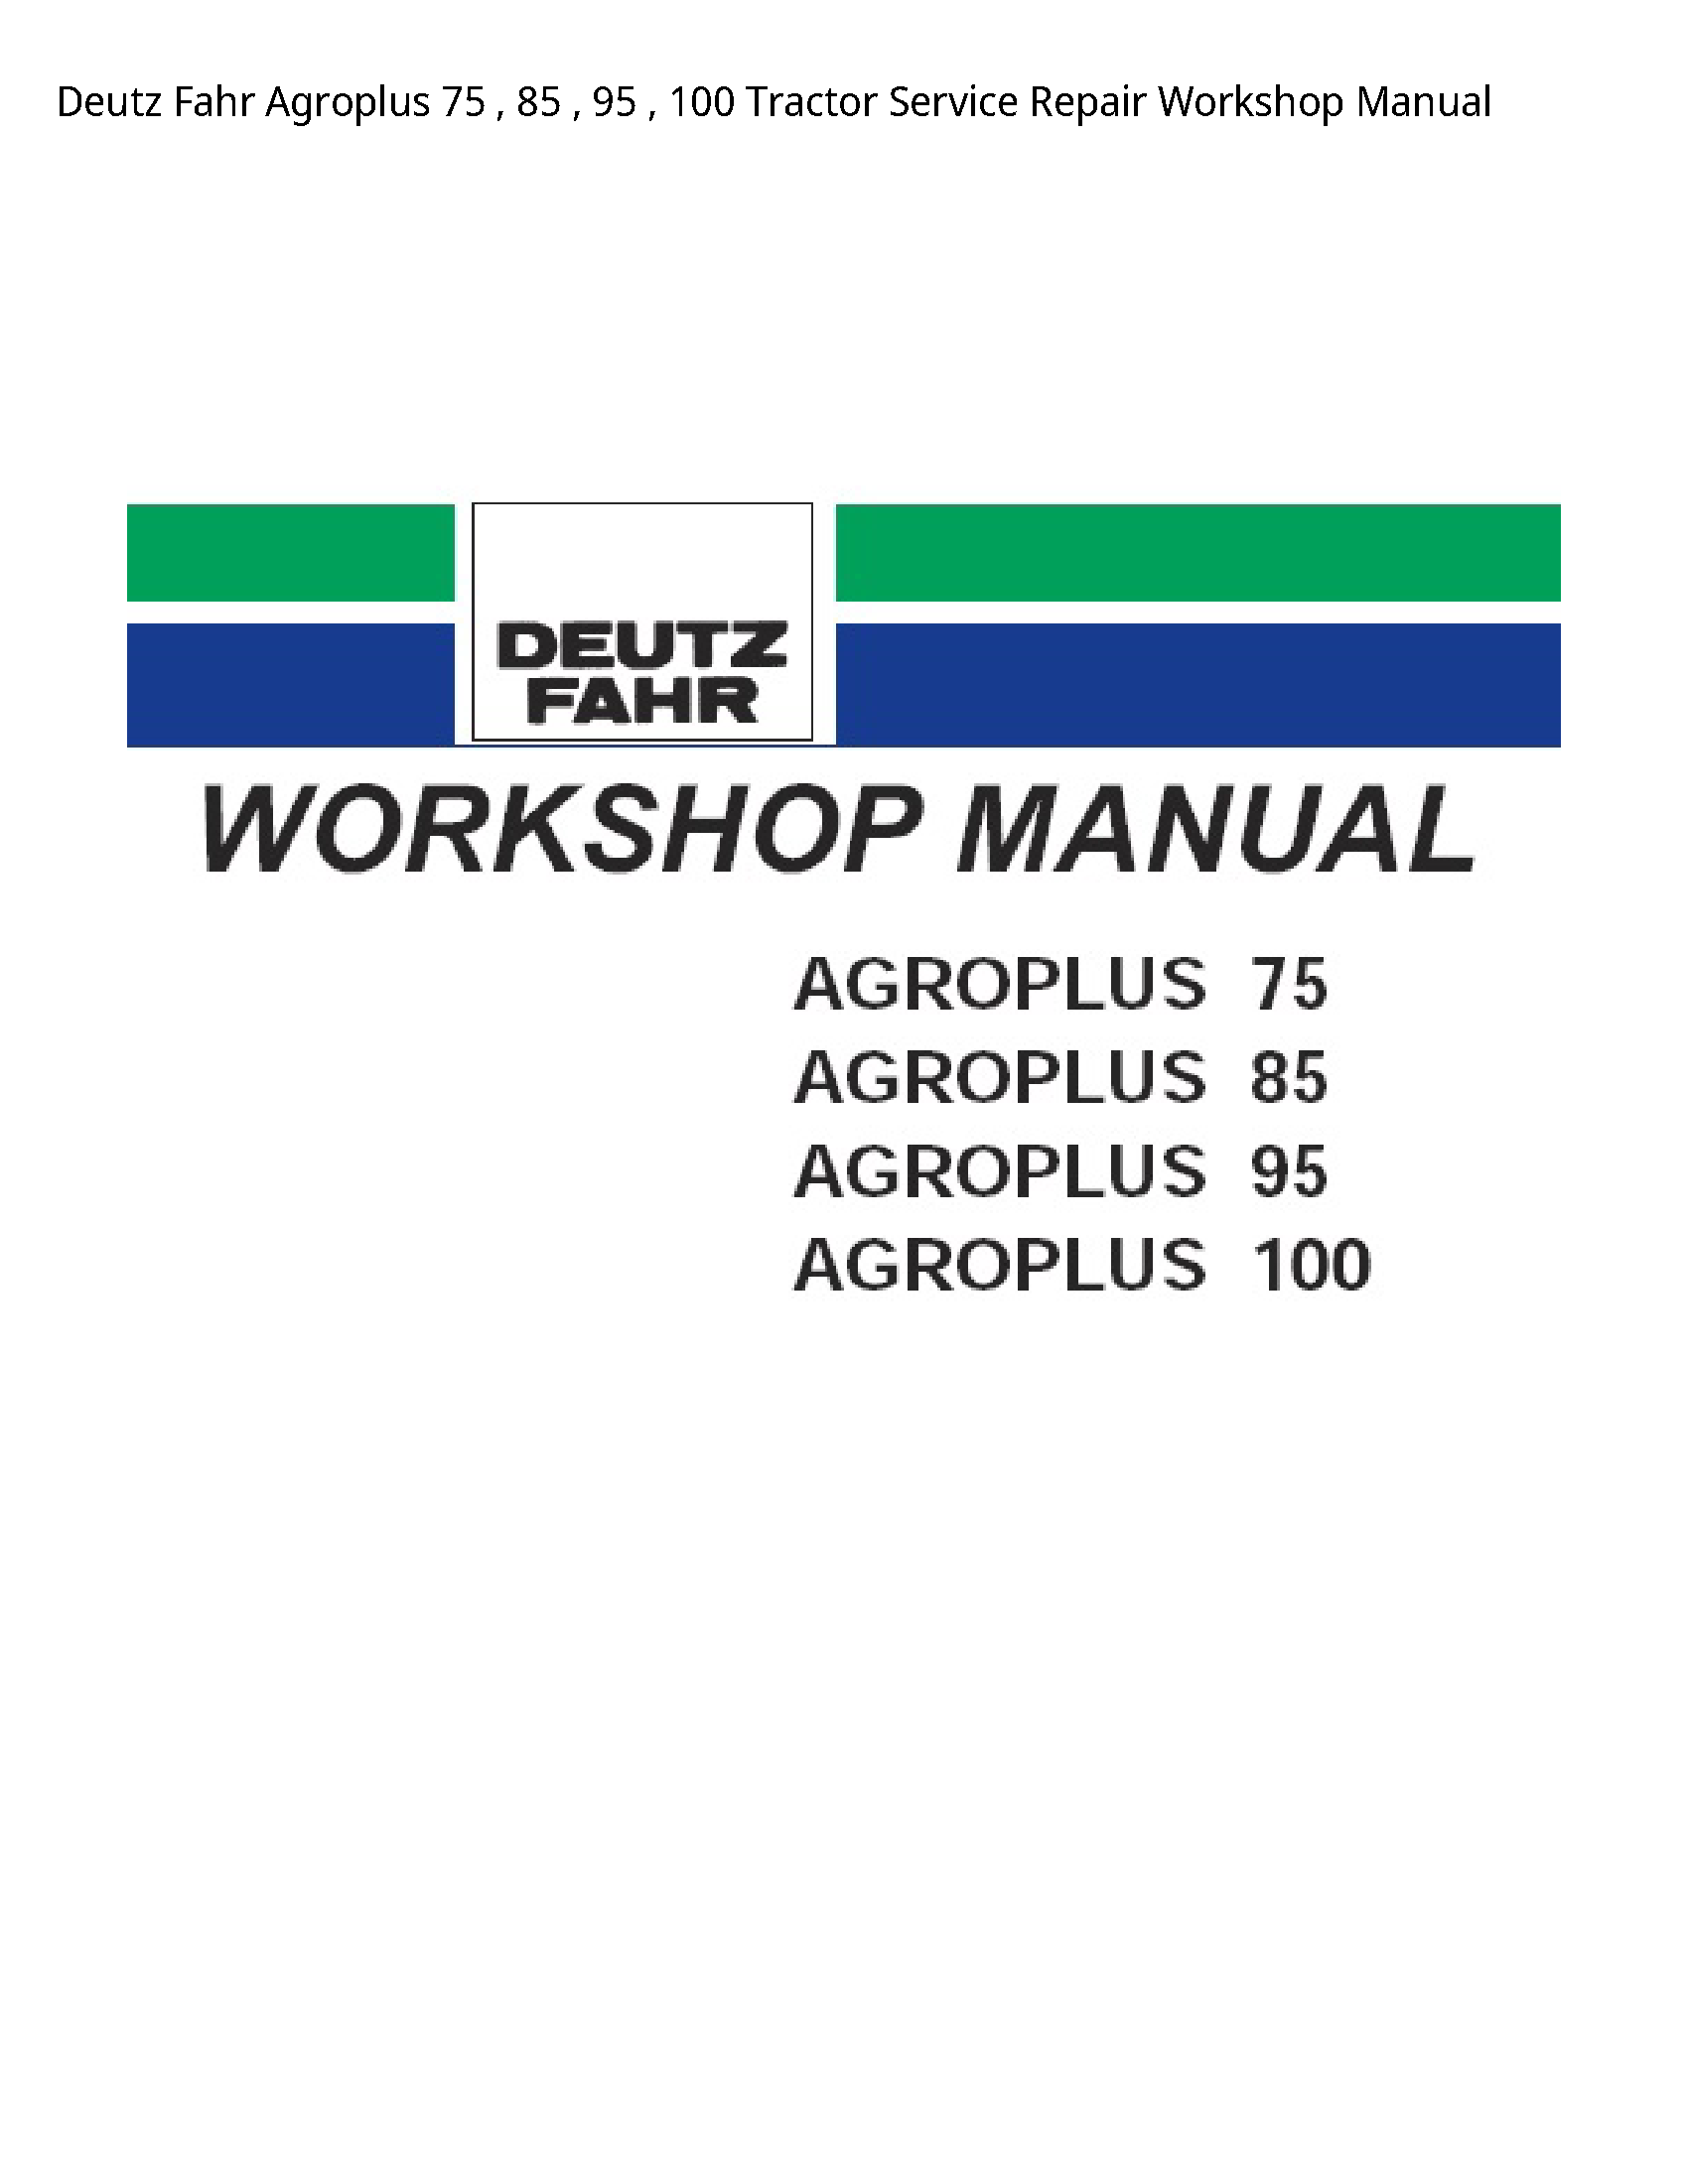 Deutz 75 Fahr Agroplus Tractor manual